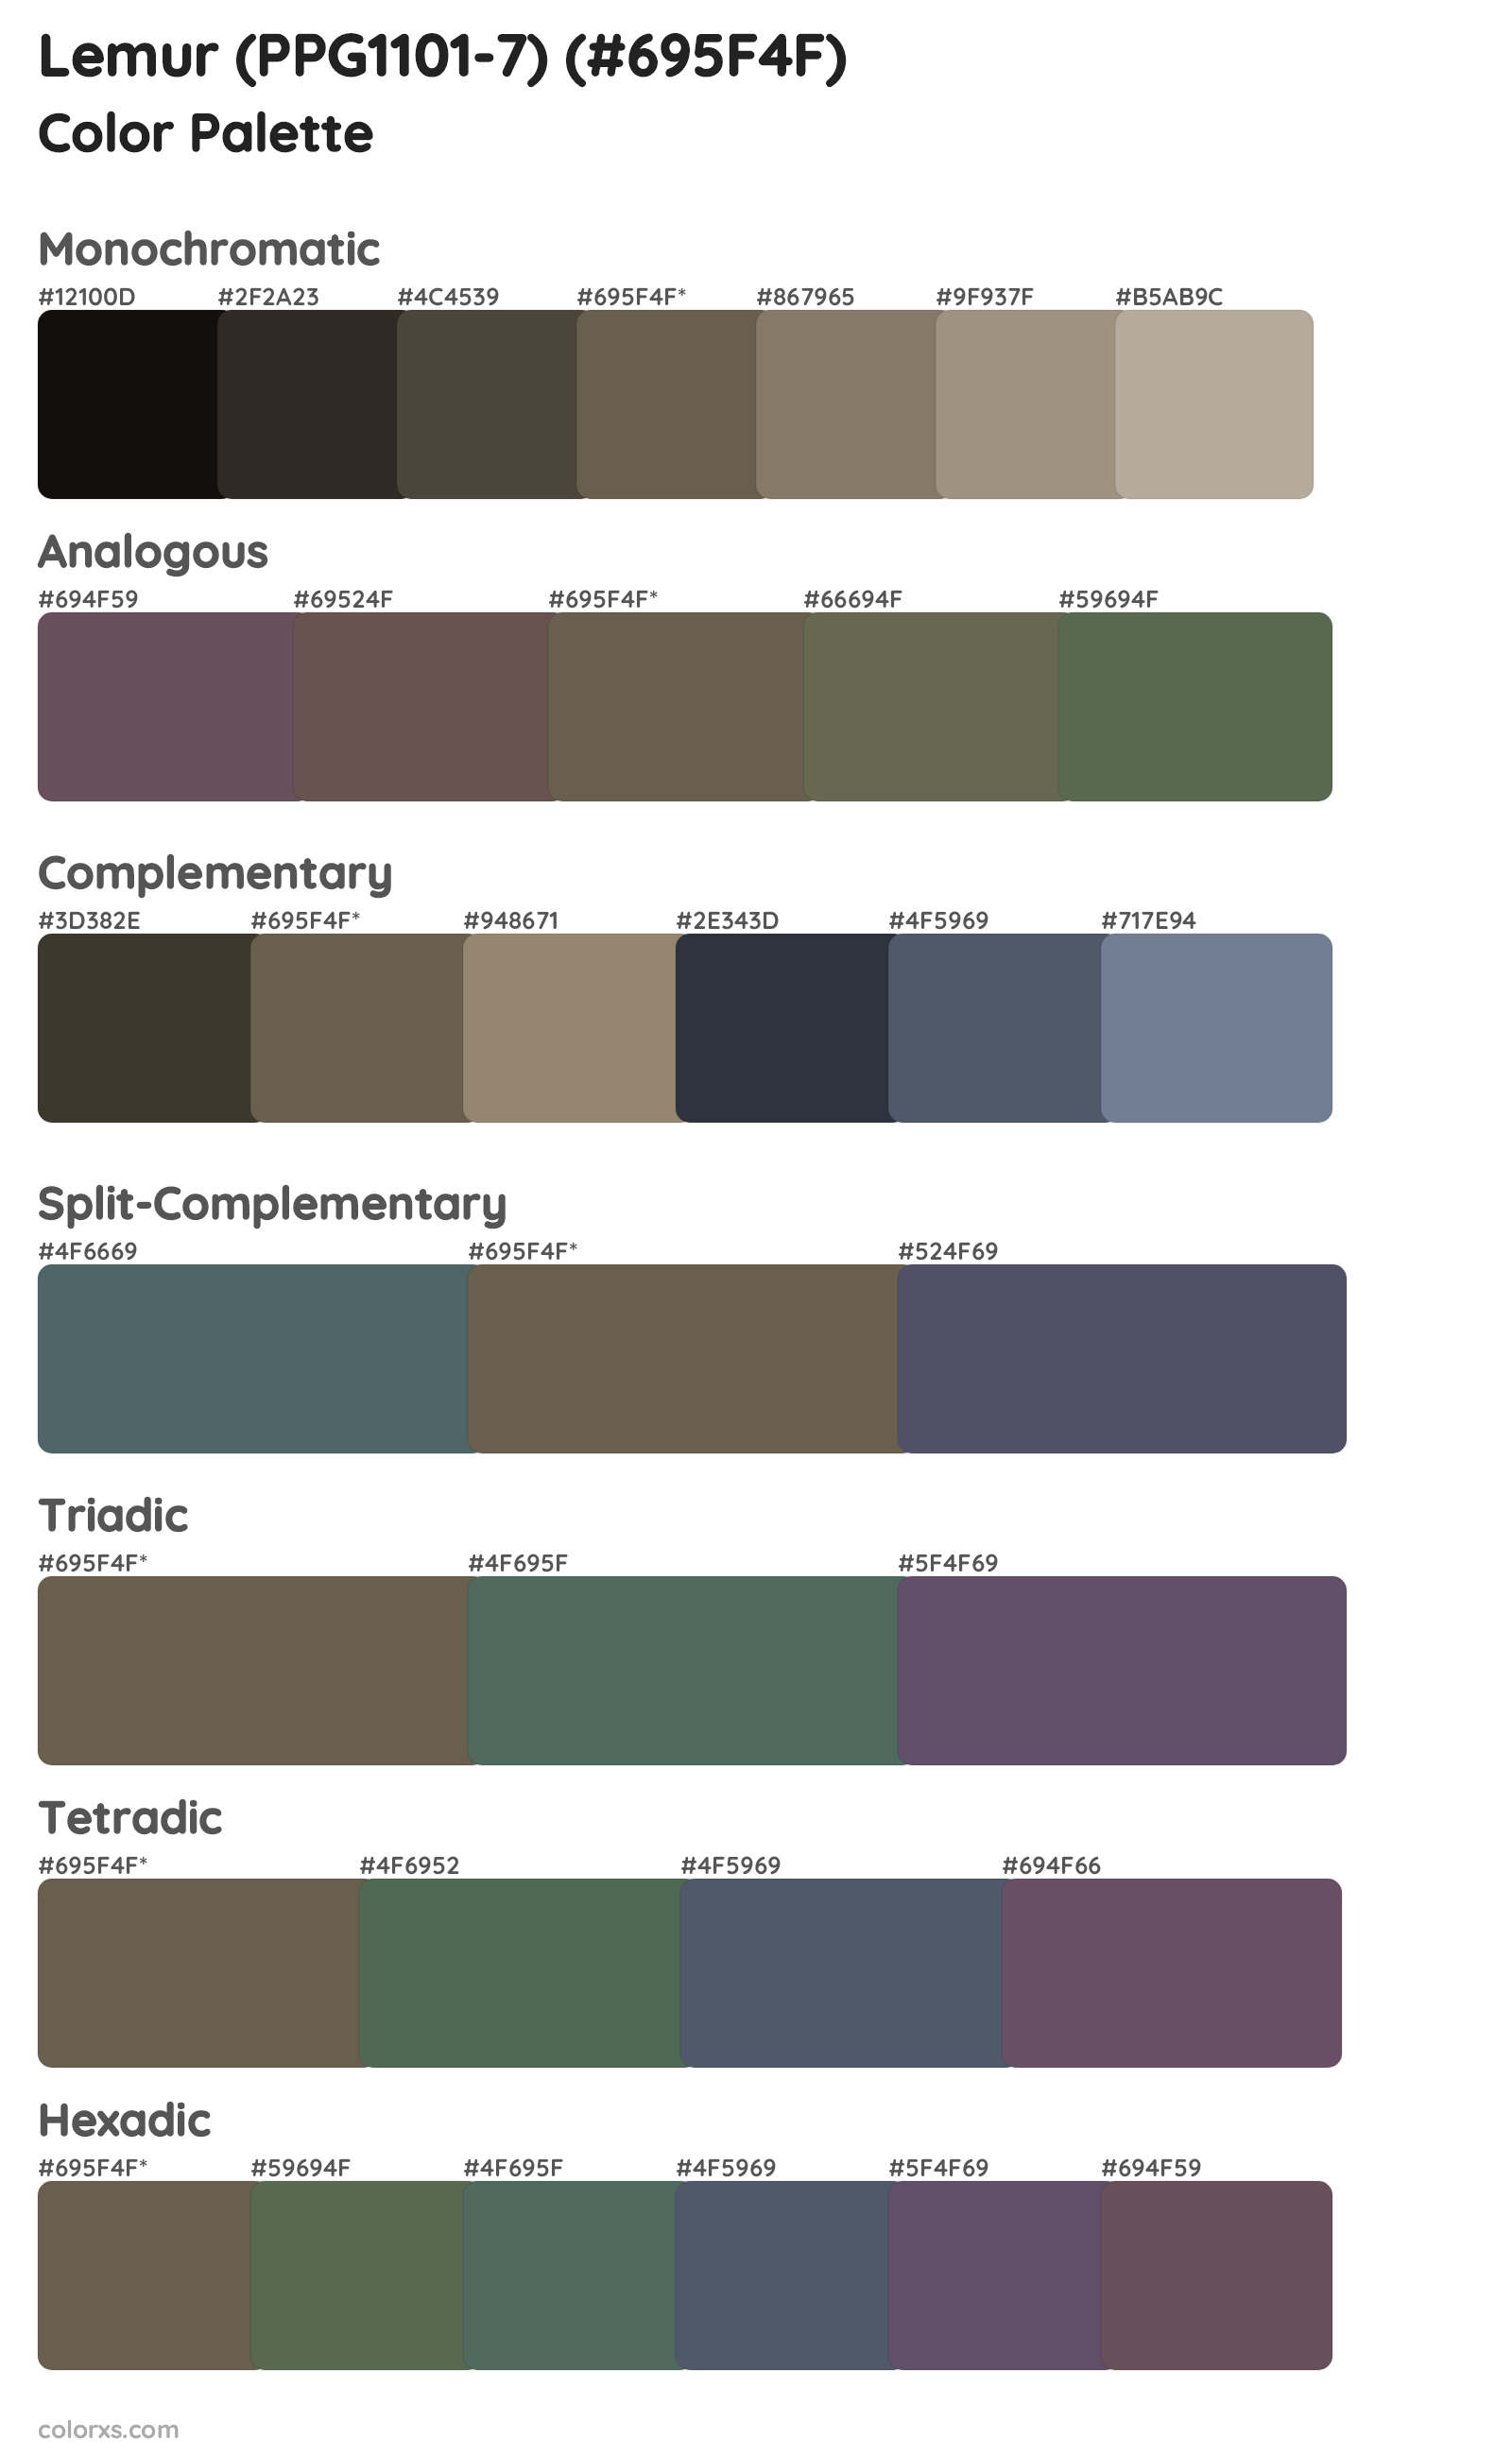 Lemur (PPG1101-7) Color Scheme Palettes